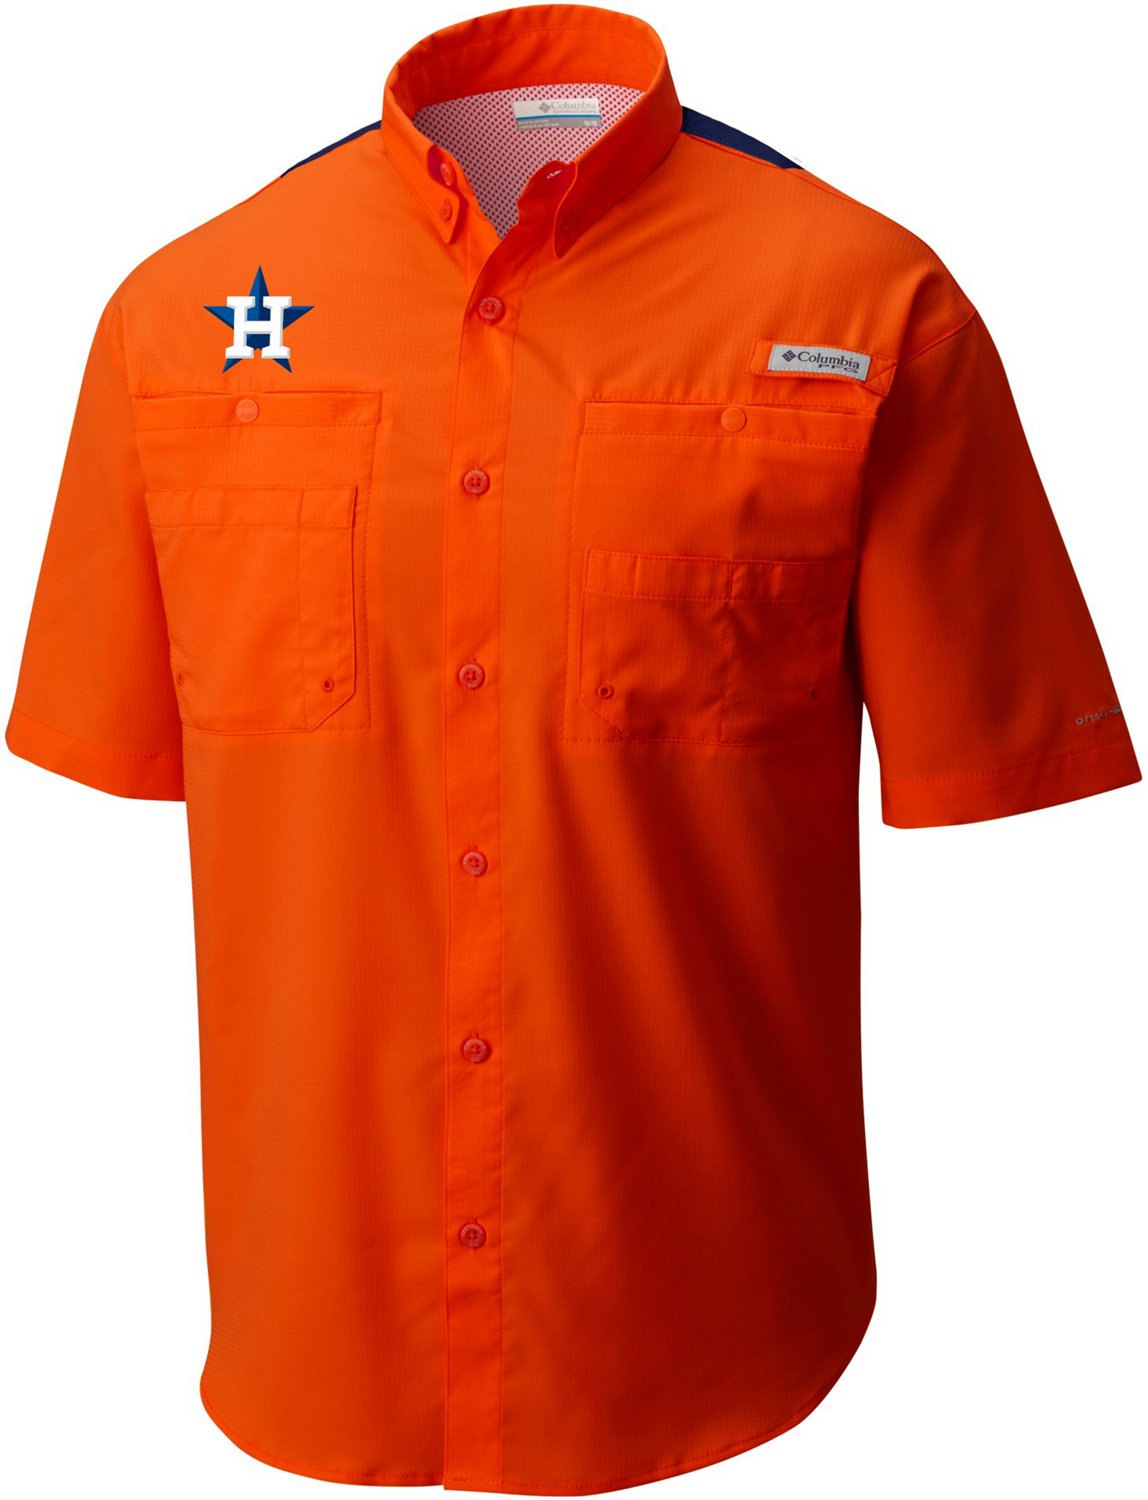 Stitches Houston Astros Mens Small Logo Polo Shirt